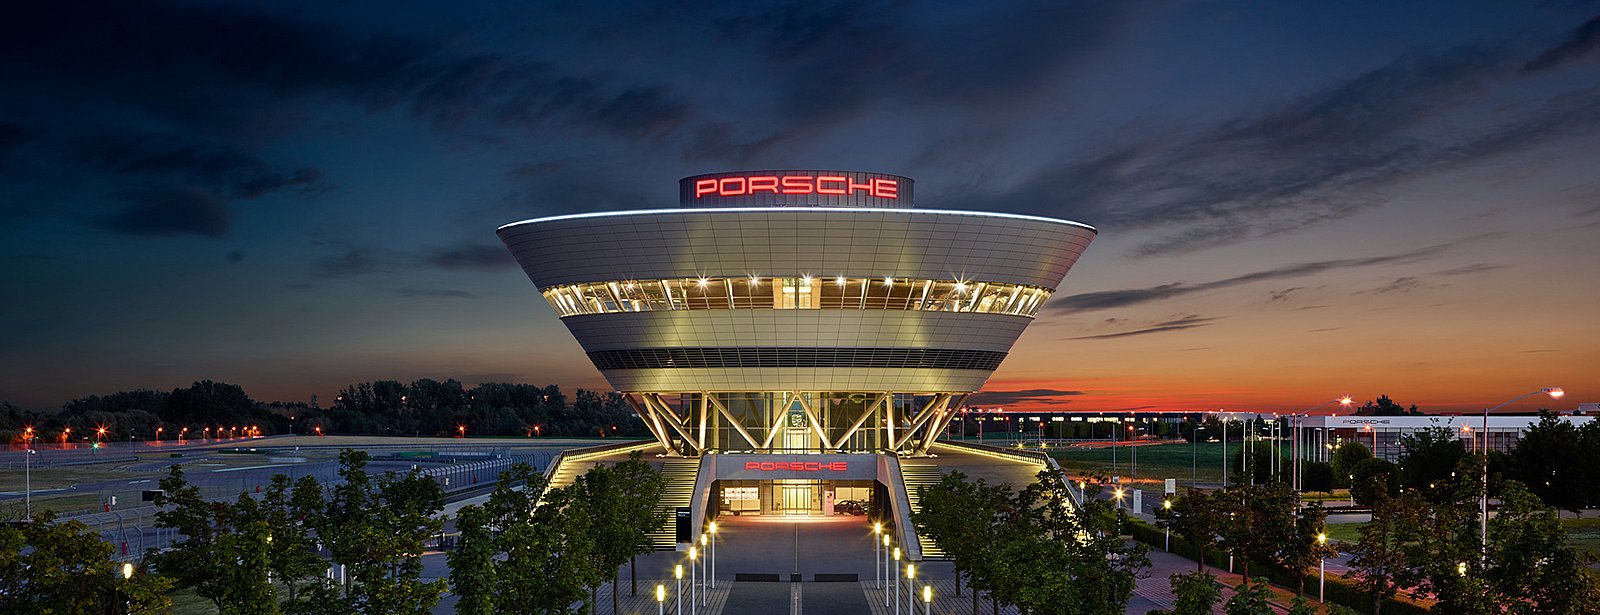 Event Location - Porsche Leipzig GmbH